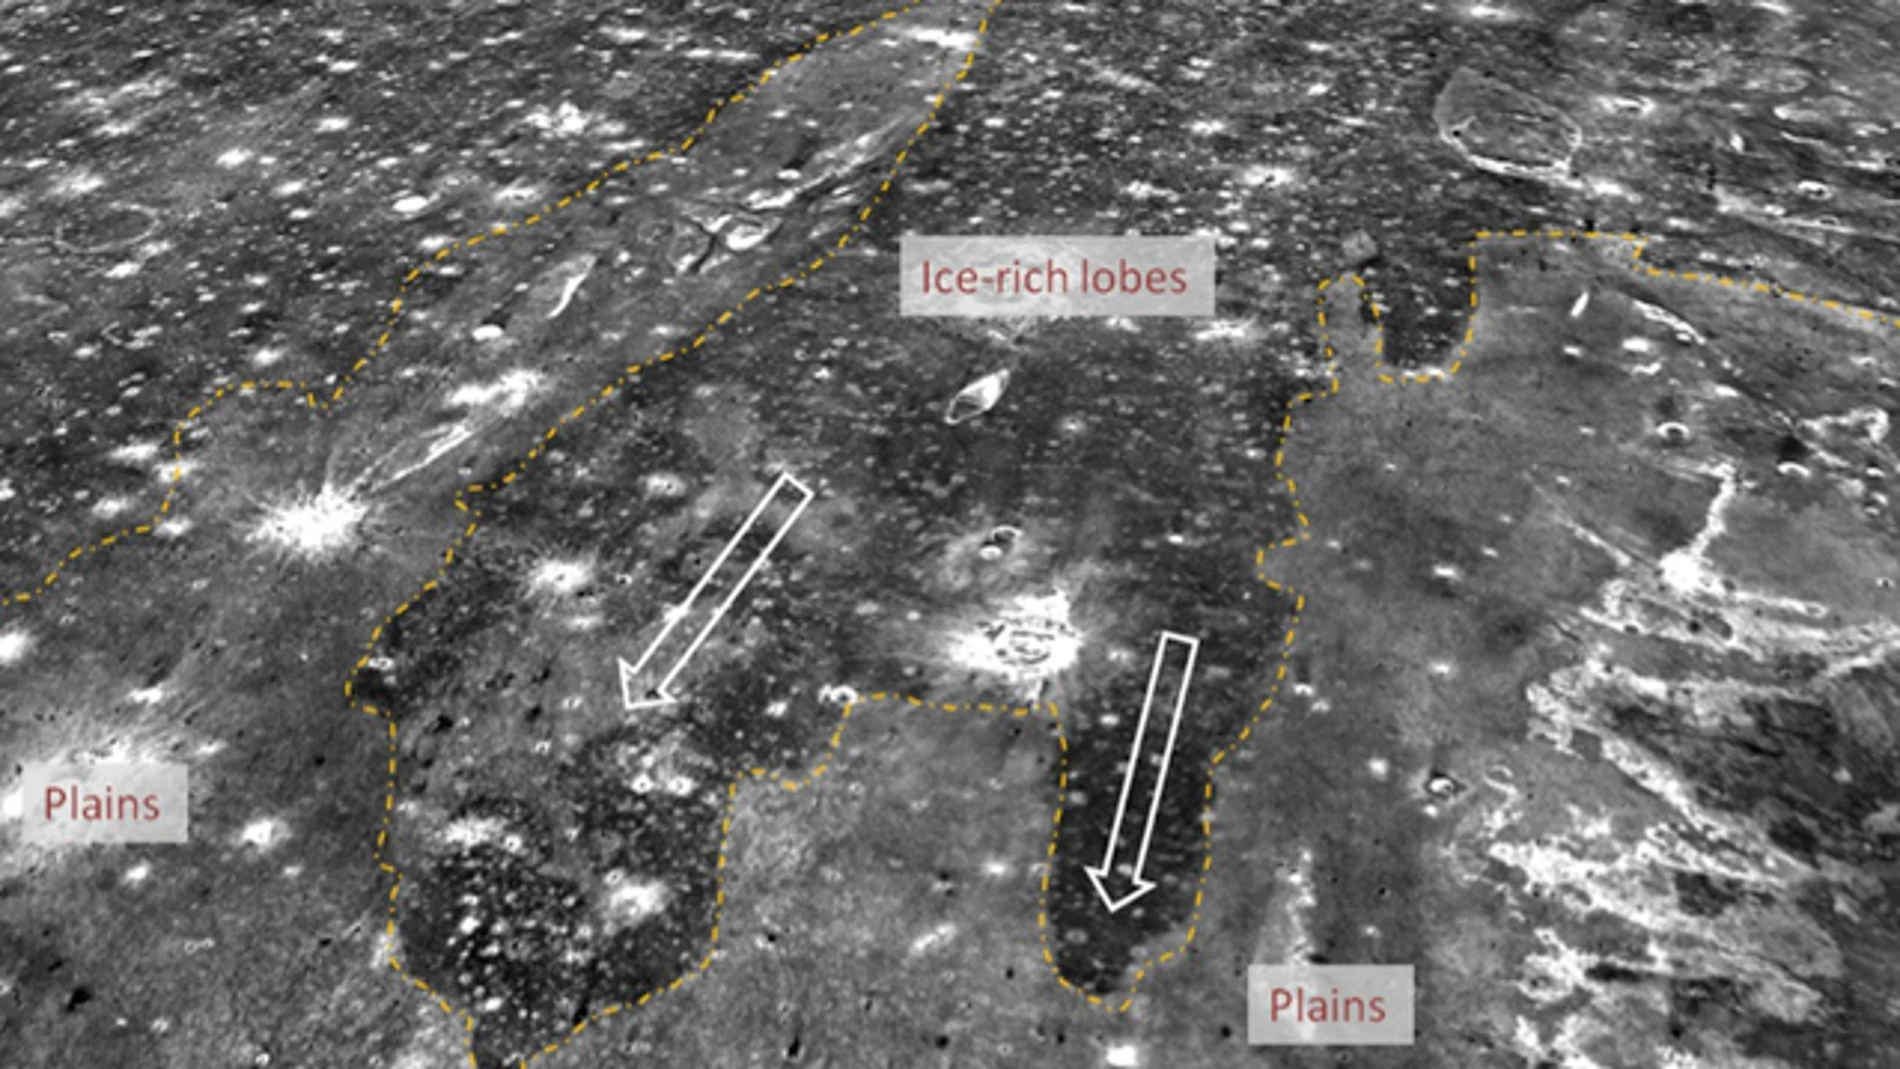 Imagen de Marte proporcionada por la NASA tomada el pasado 12 de mayo.